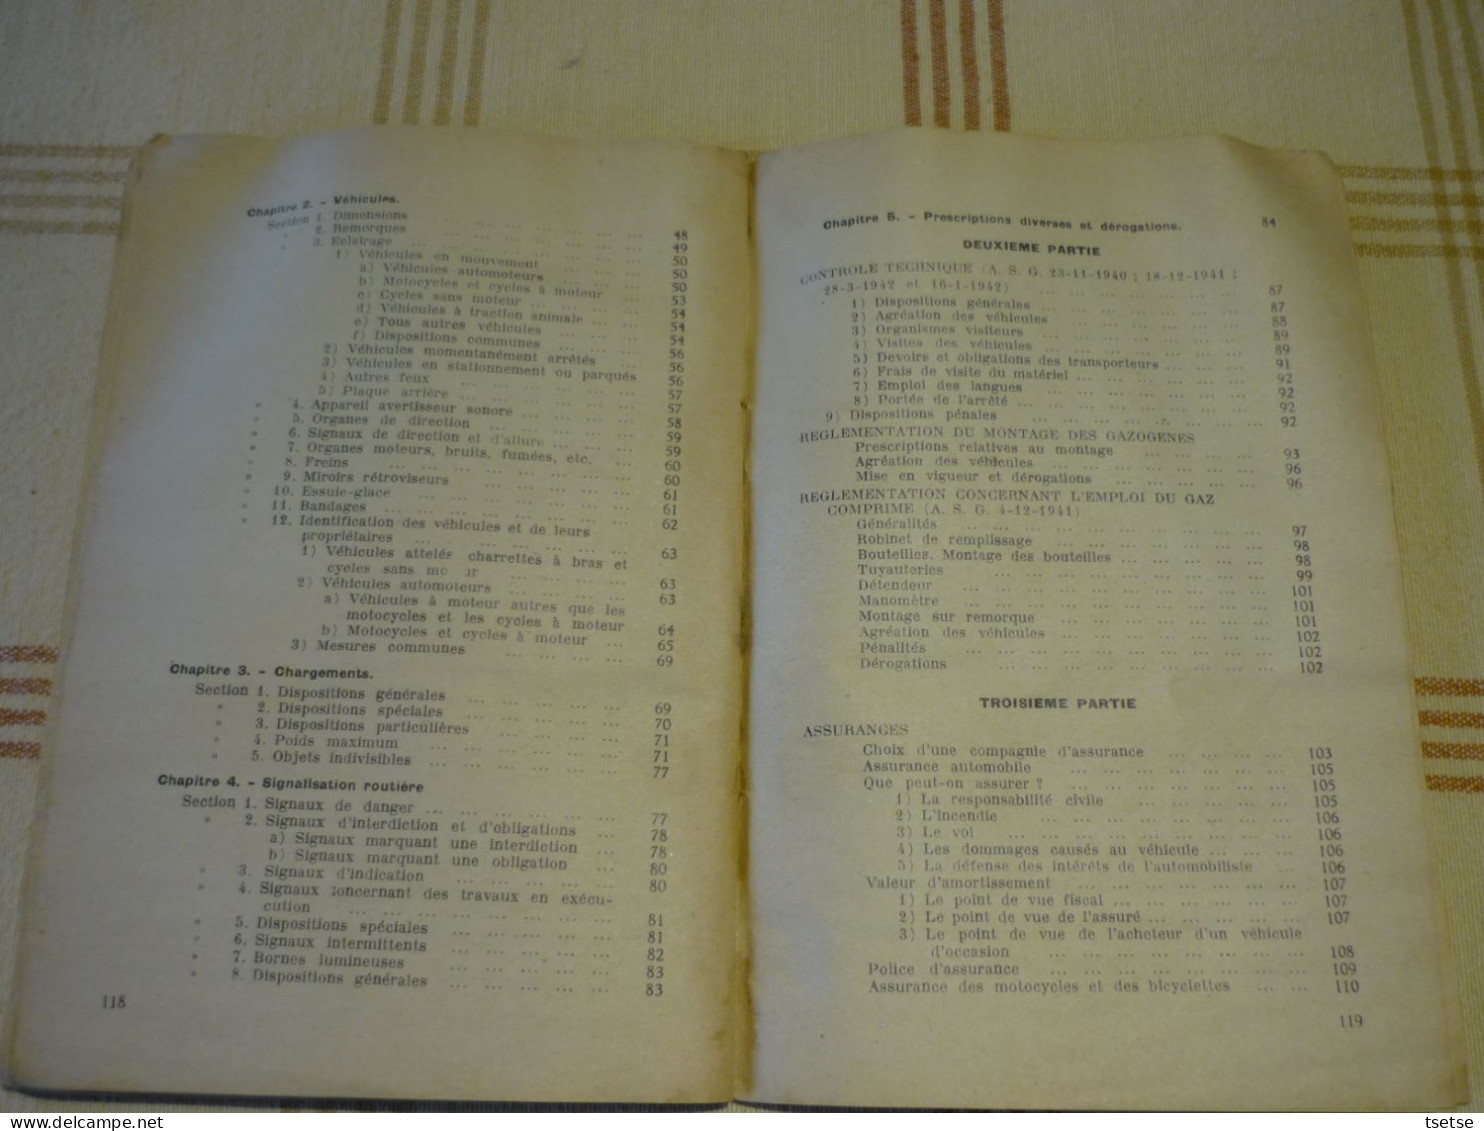 Livre " Code de la Route  " par Antoine Nicaise , de l'U.T. Charleroi -Librairie de la Bourse -1944